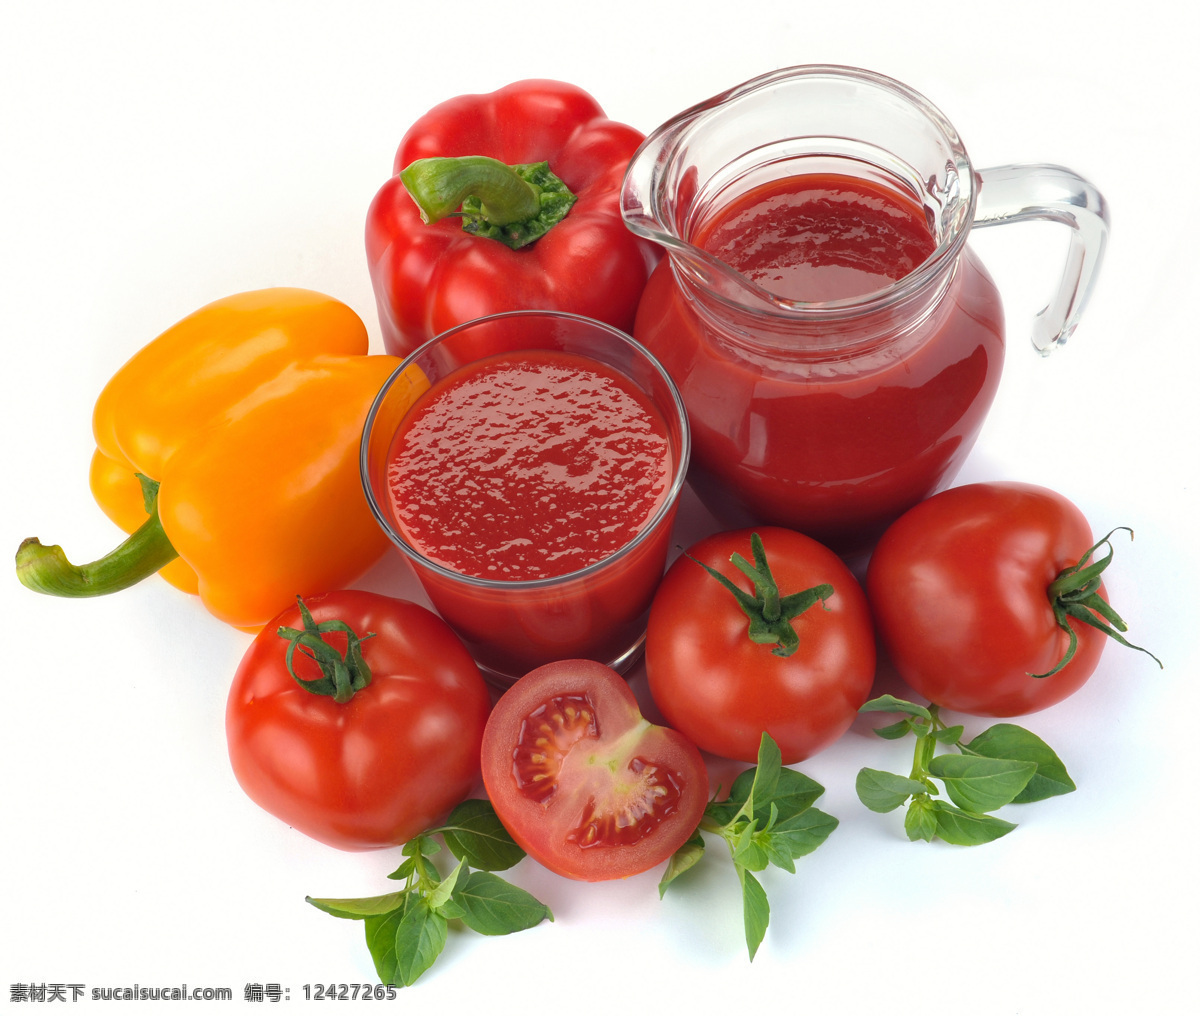 番茄汁 辣椒 番茄汁和番茄 可口的西红柿 西红柿 小西红柿 小番茄 蔬菜 健康蔬菜 蔬菜图片 餐饮美食